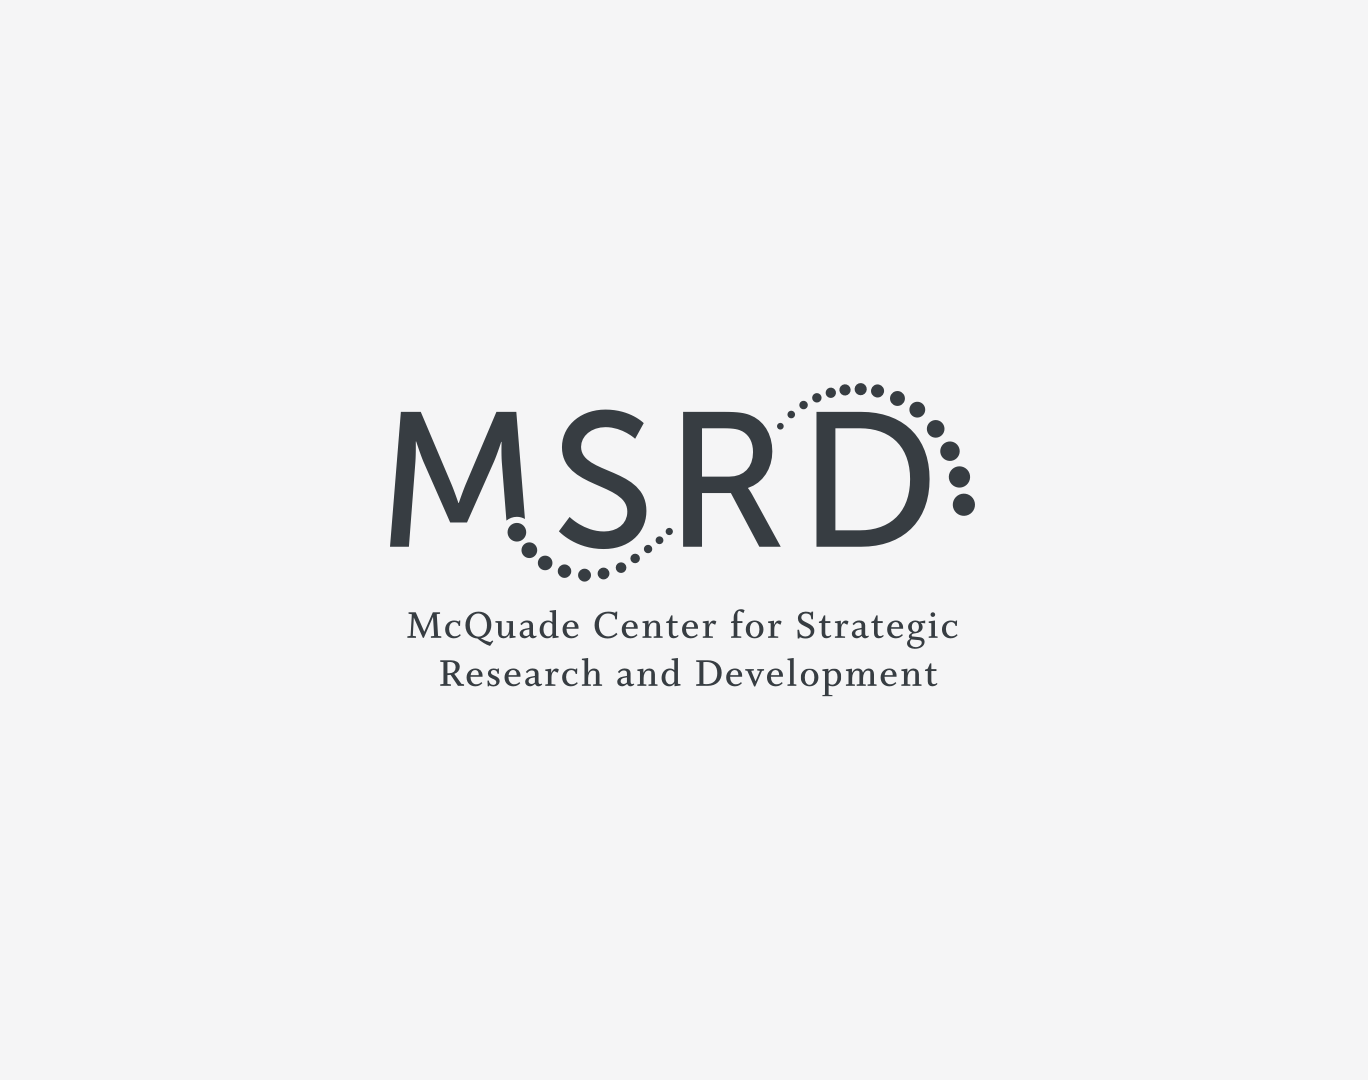 McQuade Center for Strategic Research & Development (MSRD)